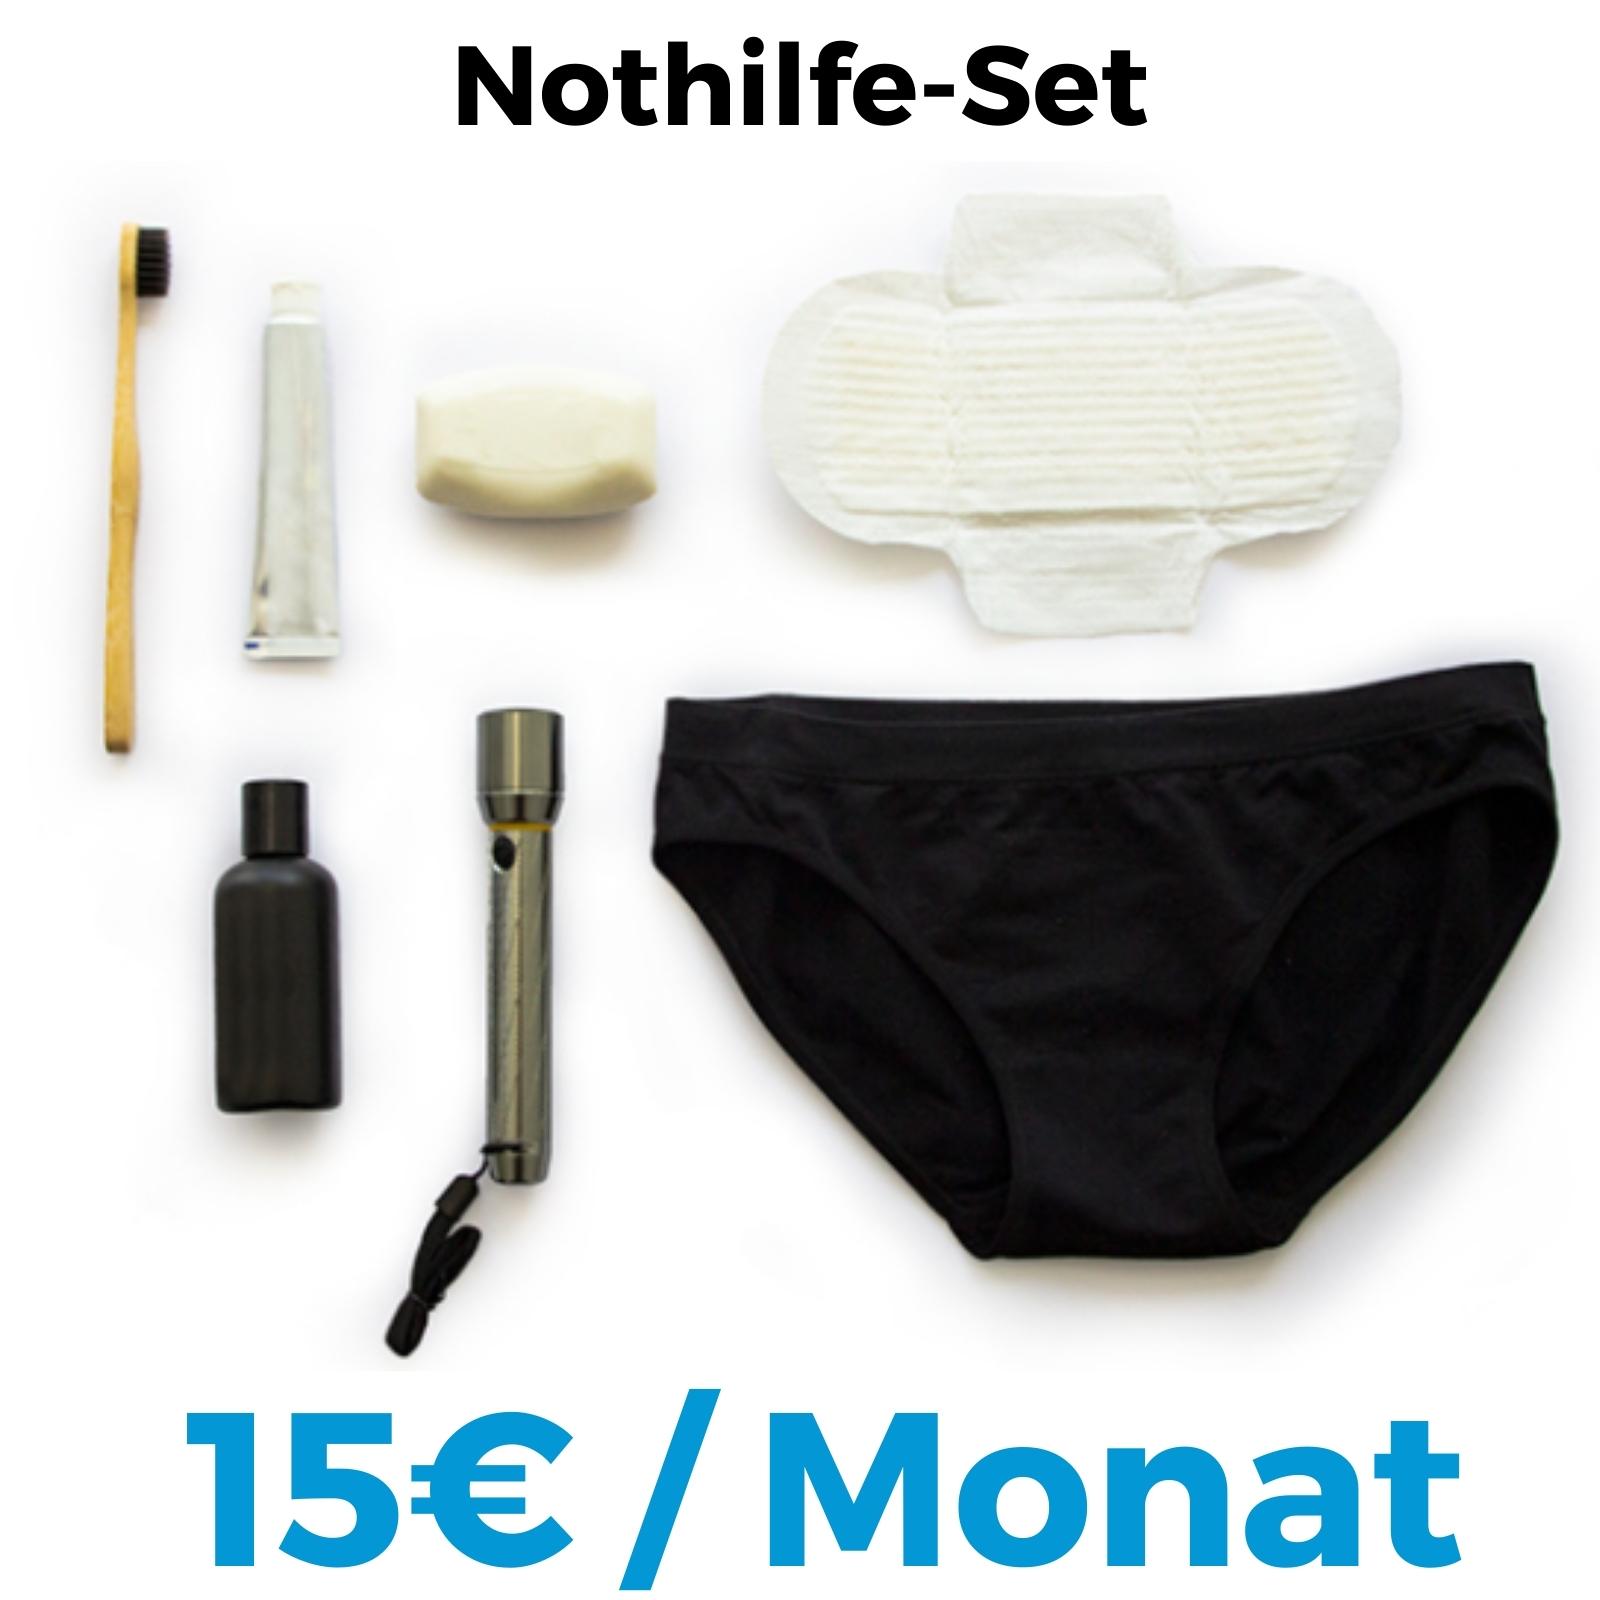 Nothilfe-Set für 15 Euro im Monat